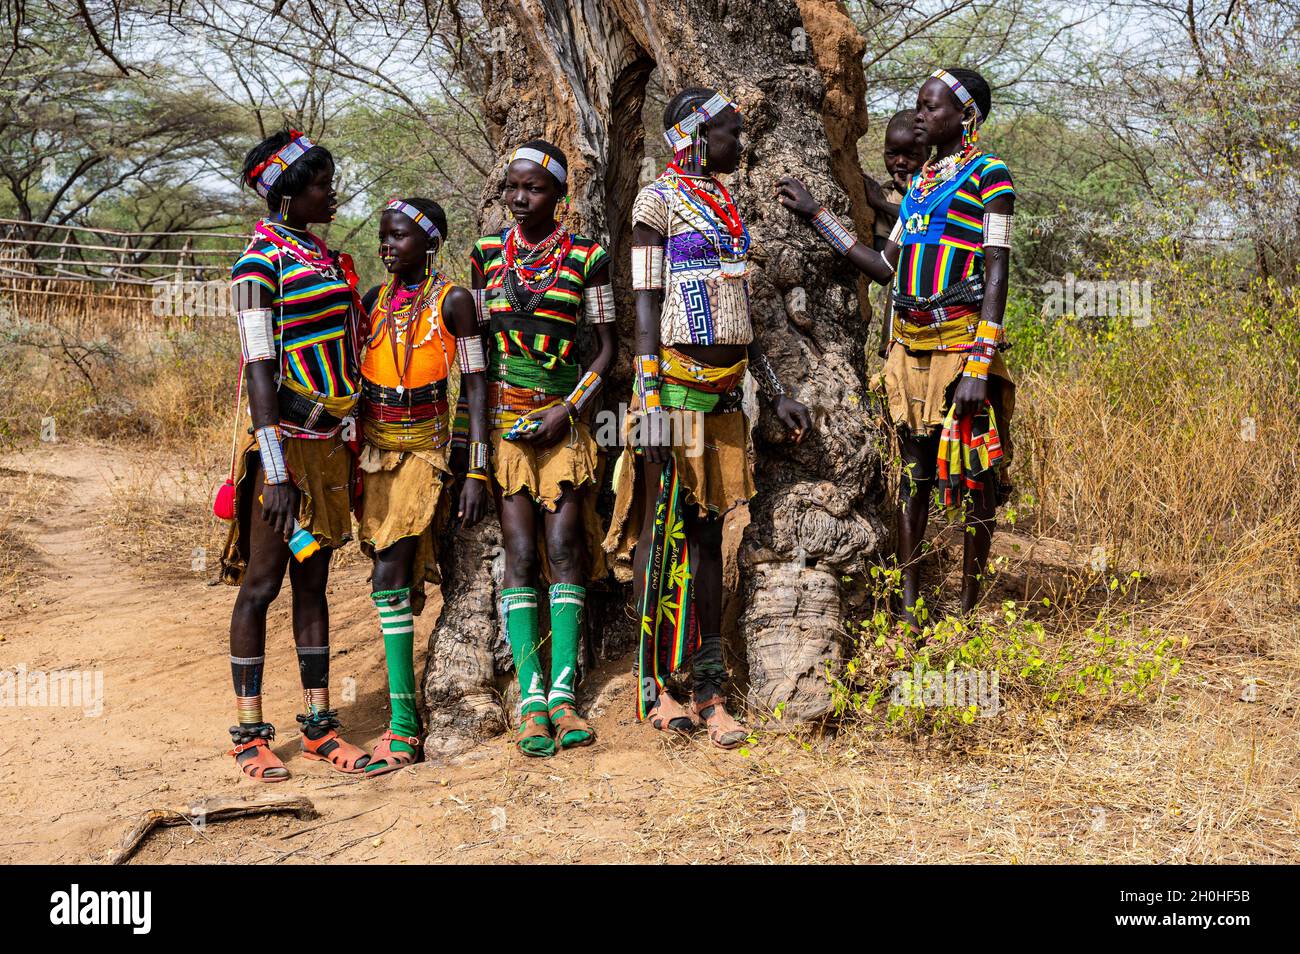 Traditionell gekleidete junge Mädchen aus dem Stamm der Laarim unterhalten sich unter einem Baum, Boya Hills, Eastern Equatoria, Südsudan Stockfoto